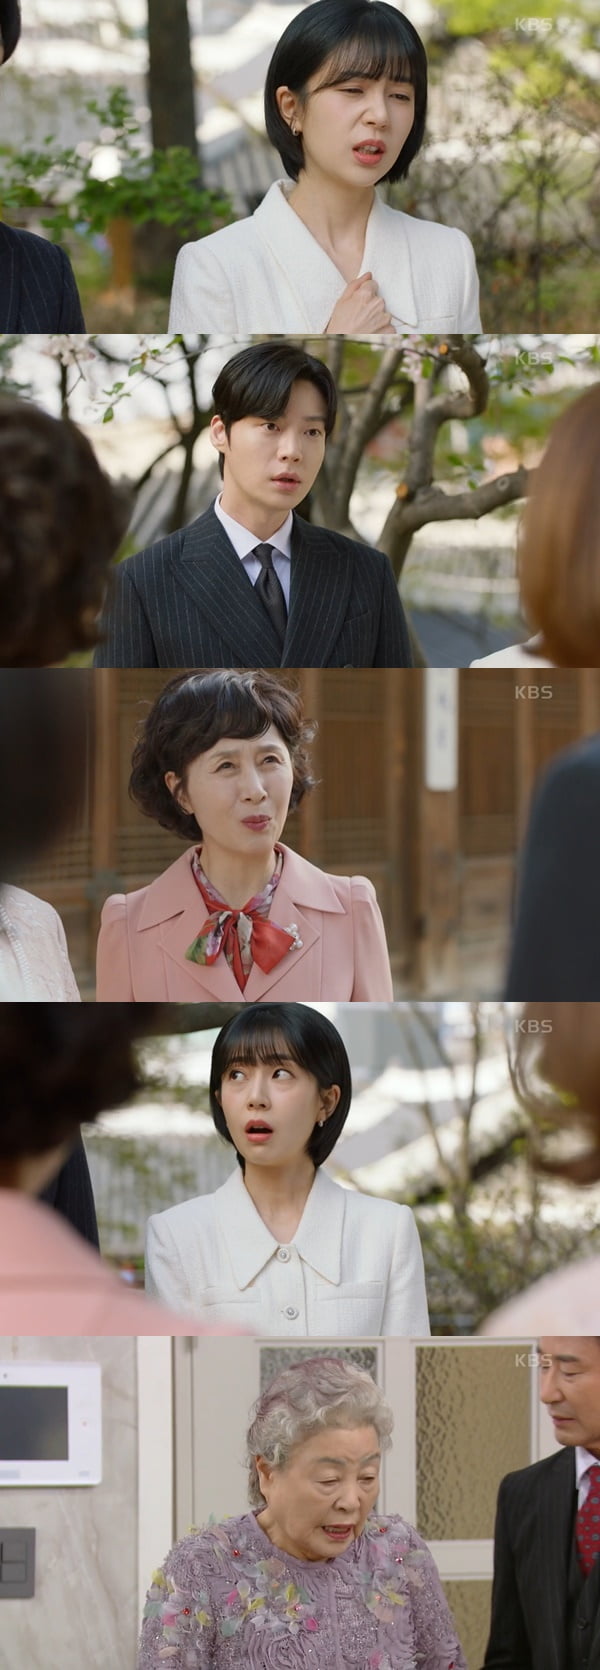 /사진=KBS2 '진짜가 나타났다!' 방송 화면 캡처